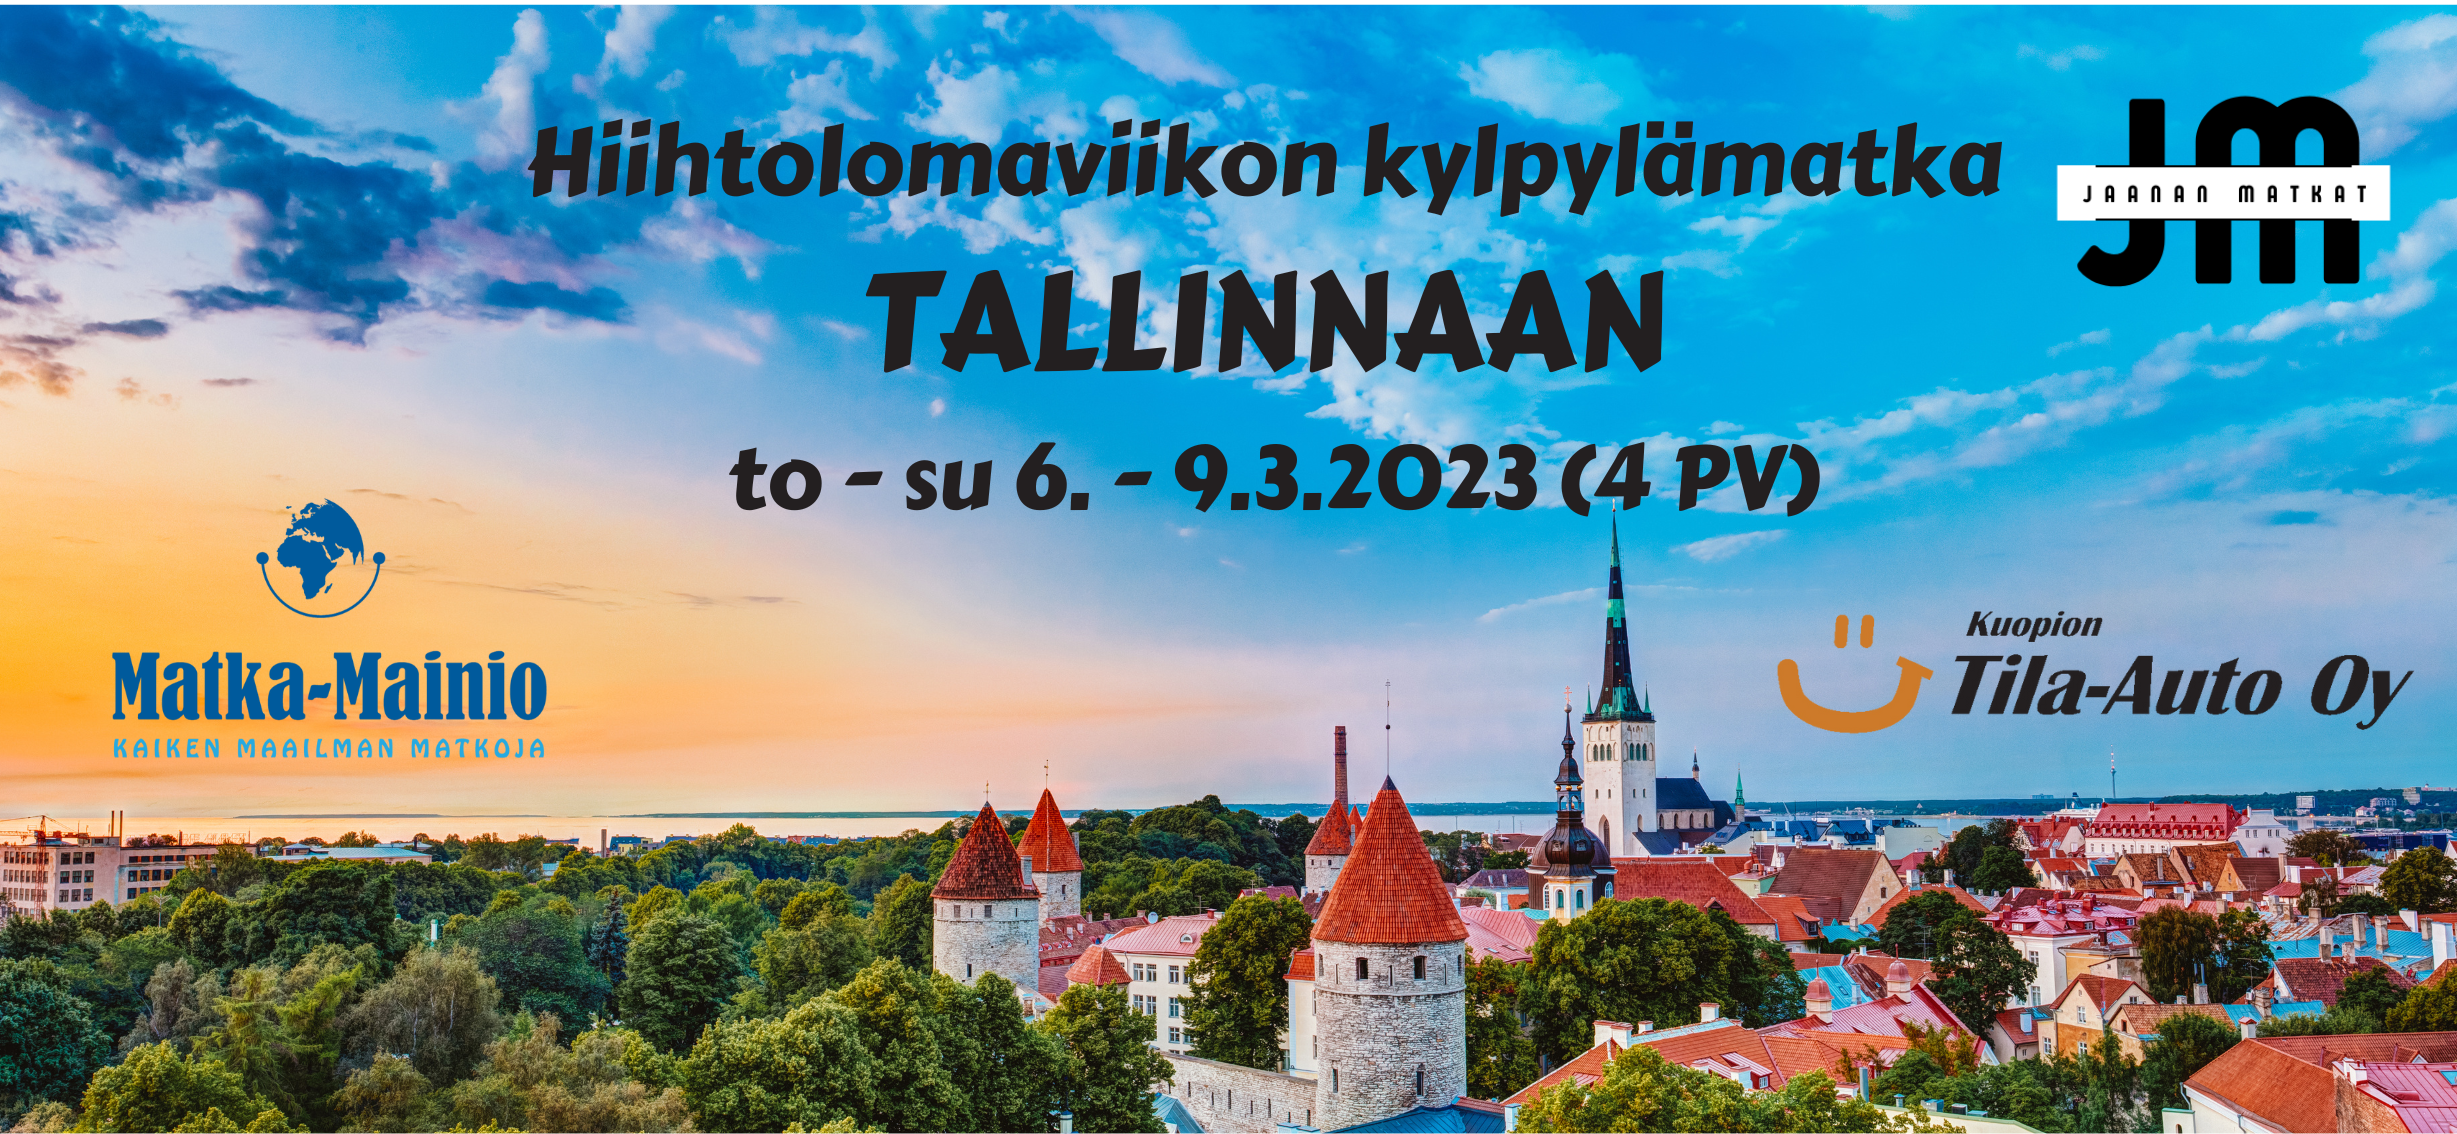 6. - 9.3.2023 Hiihtolomaviikon kylpylämatka Tallinnaan